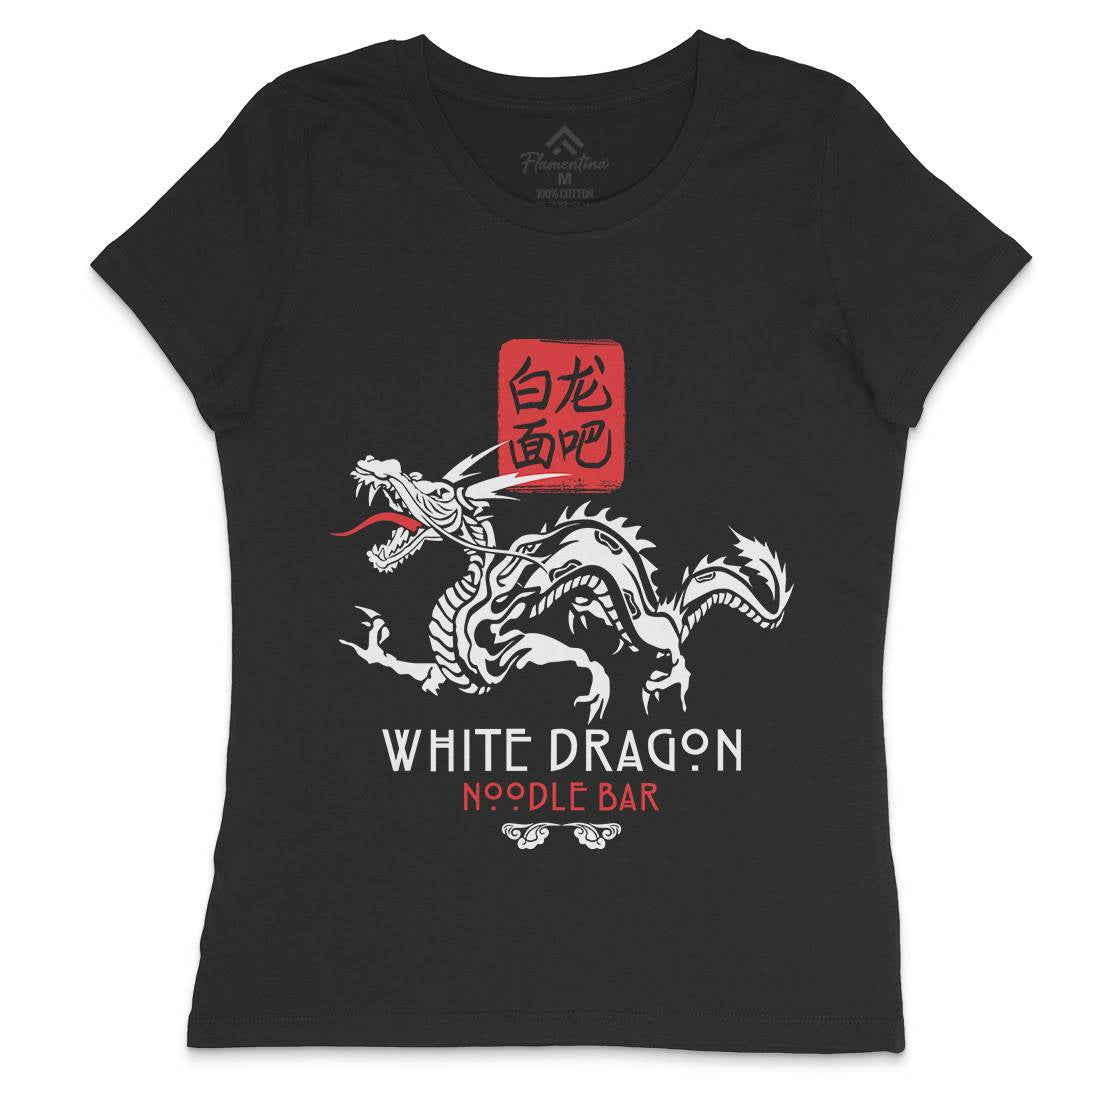 White Dragon Noodle Bar Womens Crew Neck T-Shirt Space D242